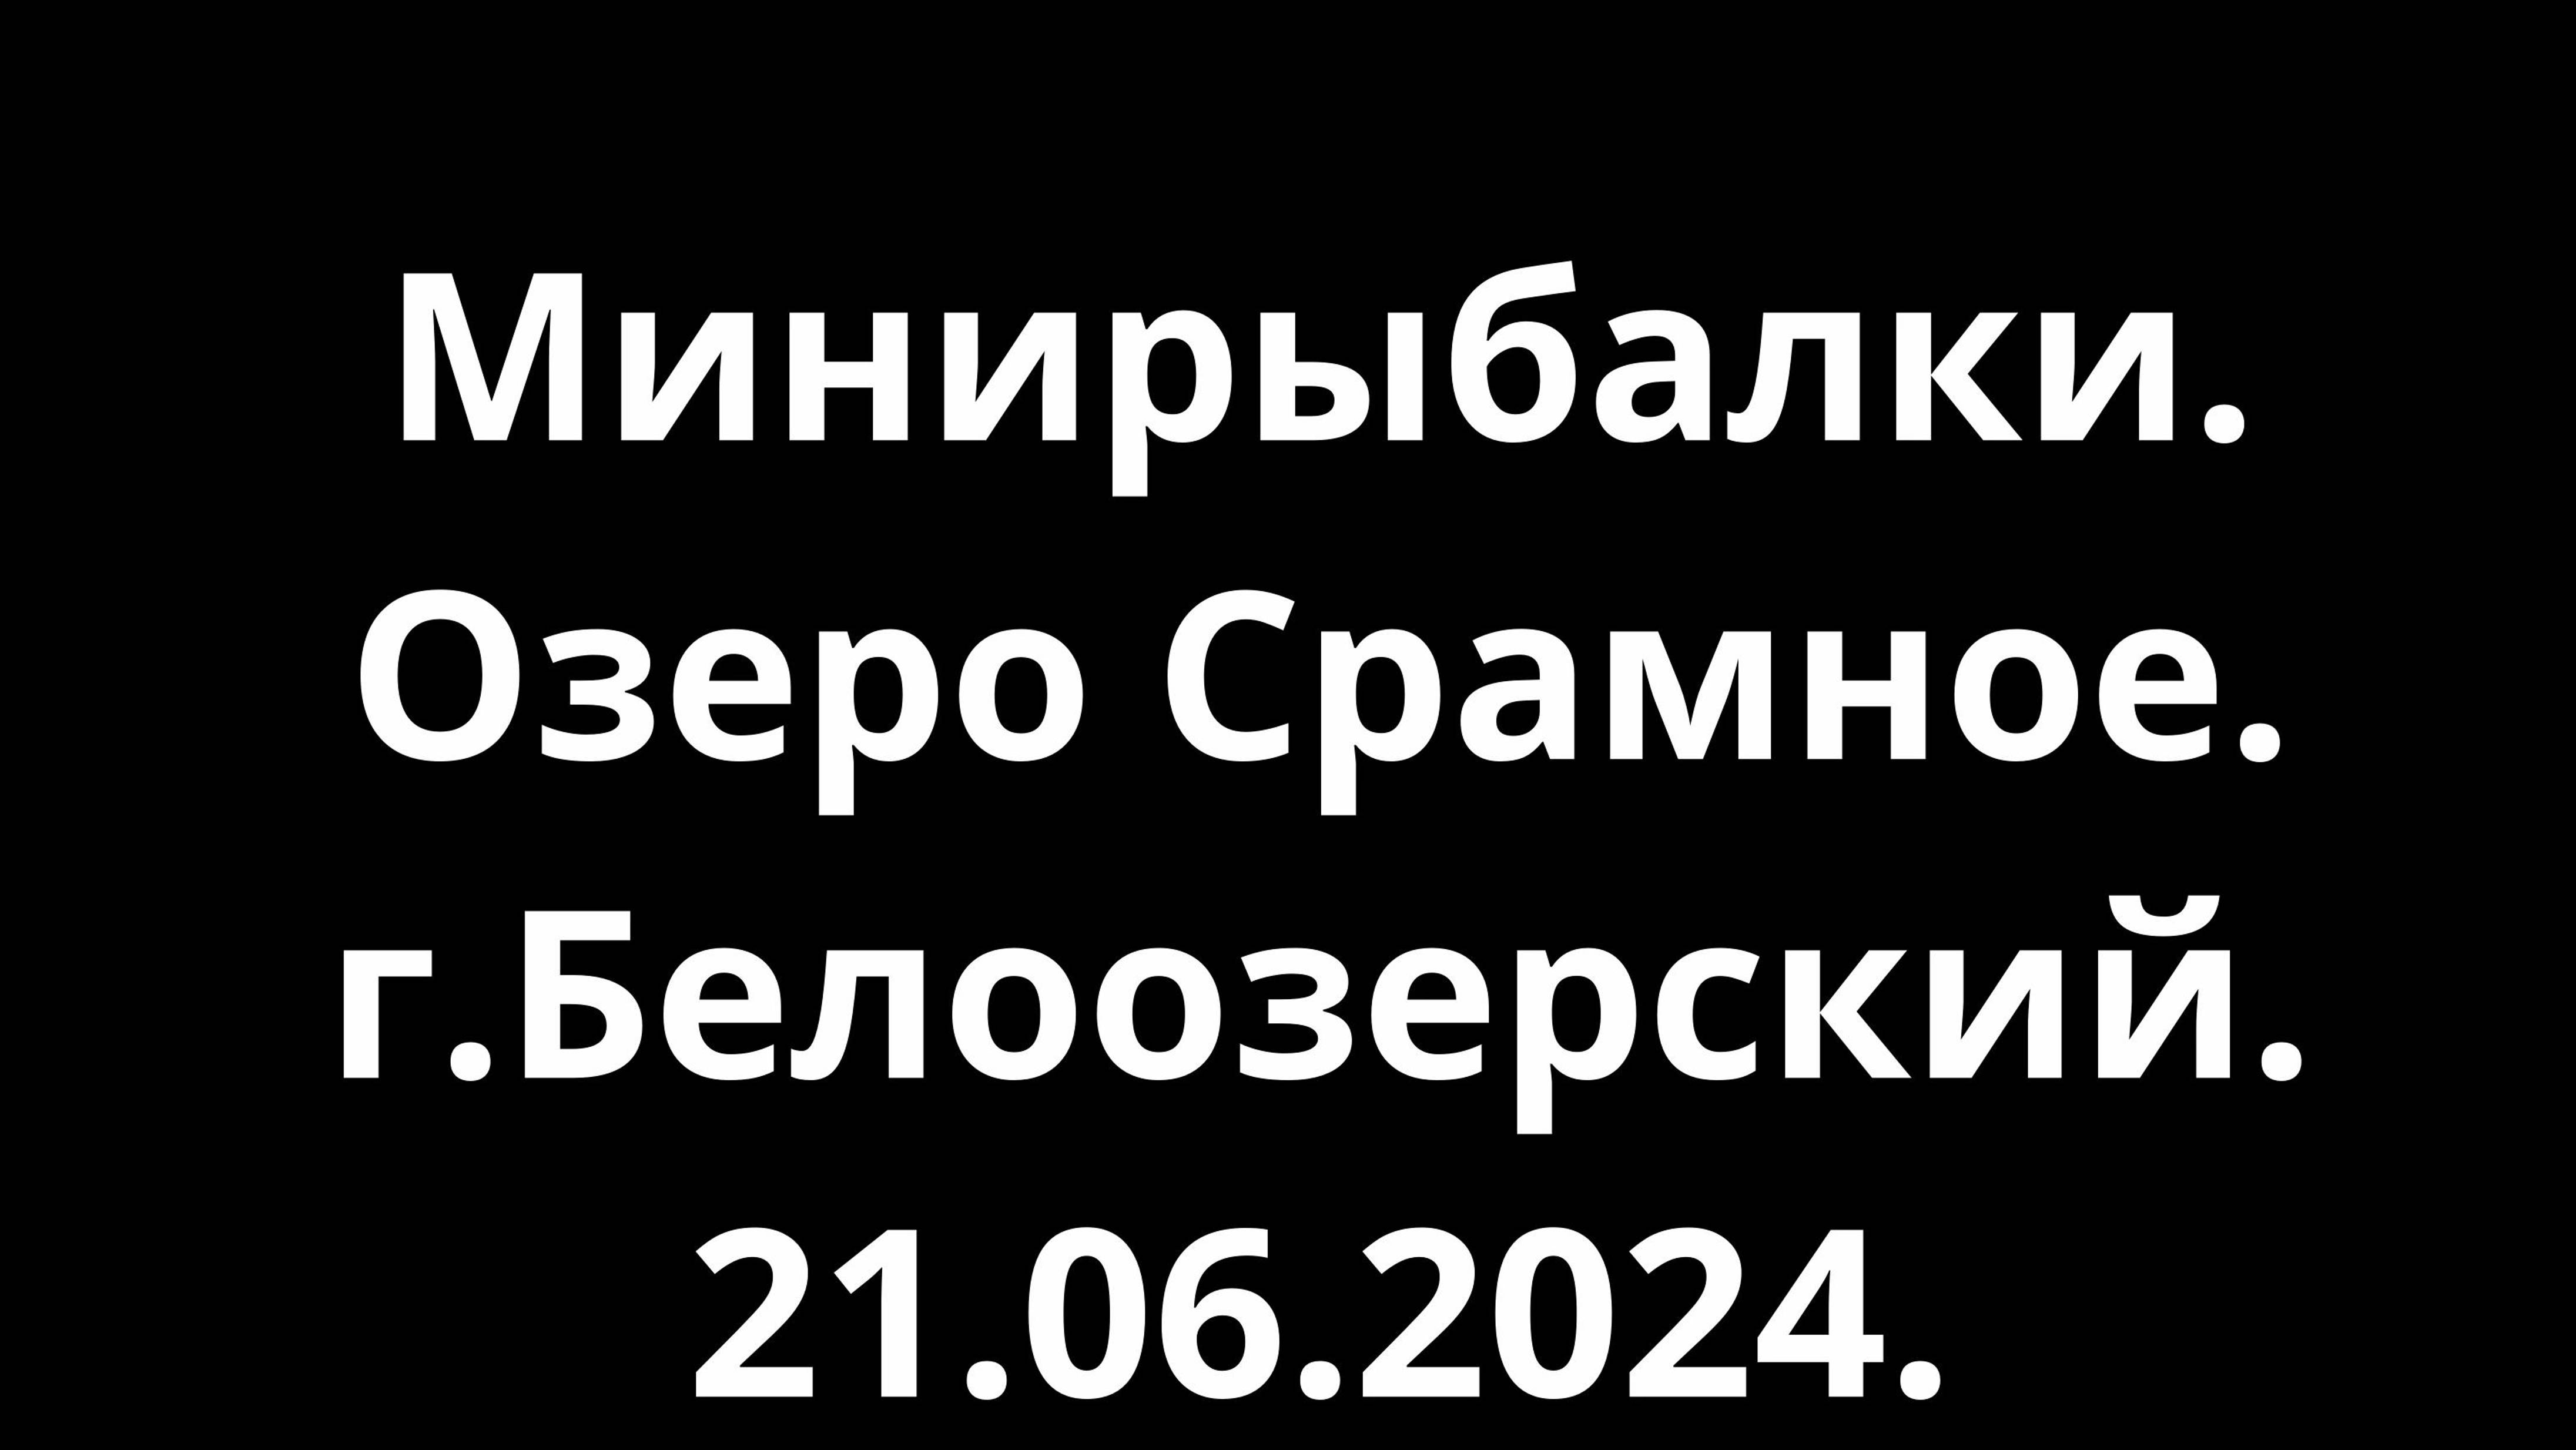 Минирыбалки. озеро Срамное. г.Белоозёрский. 21.06.2024.